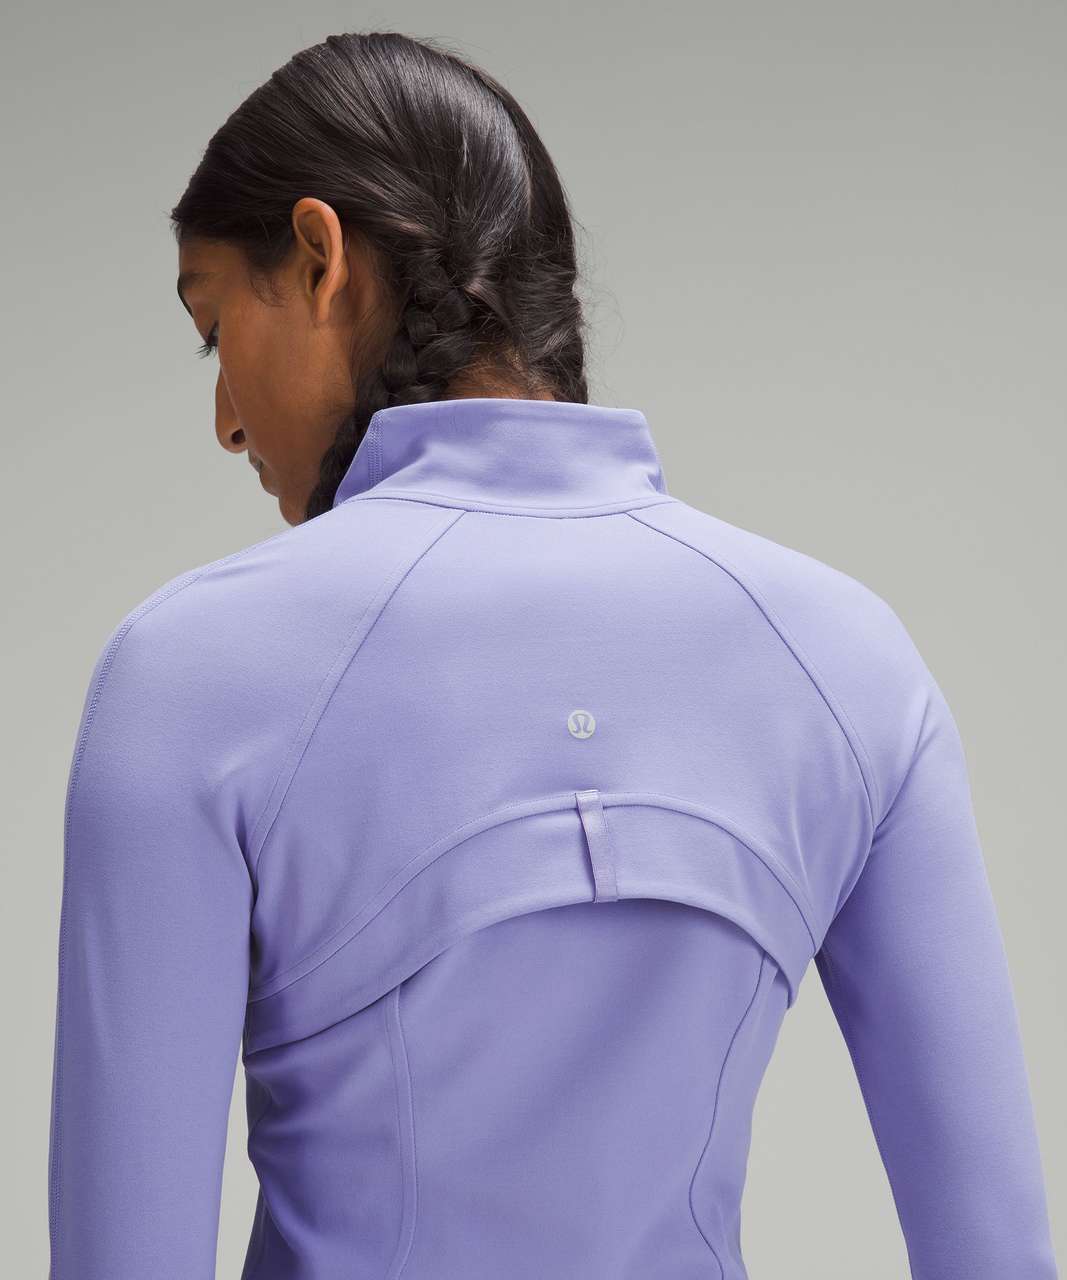 Lululemon Define Lavender Purple Jacket size 8